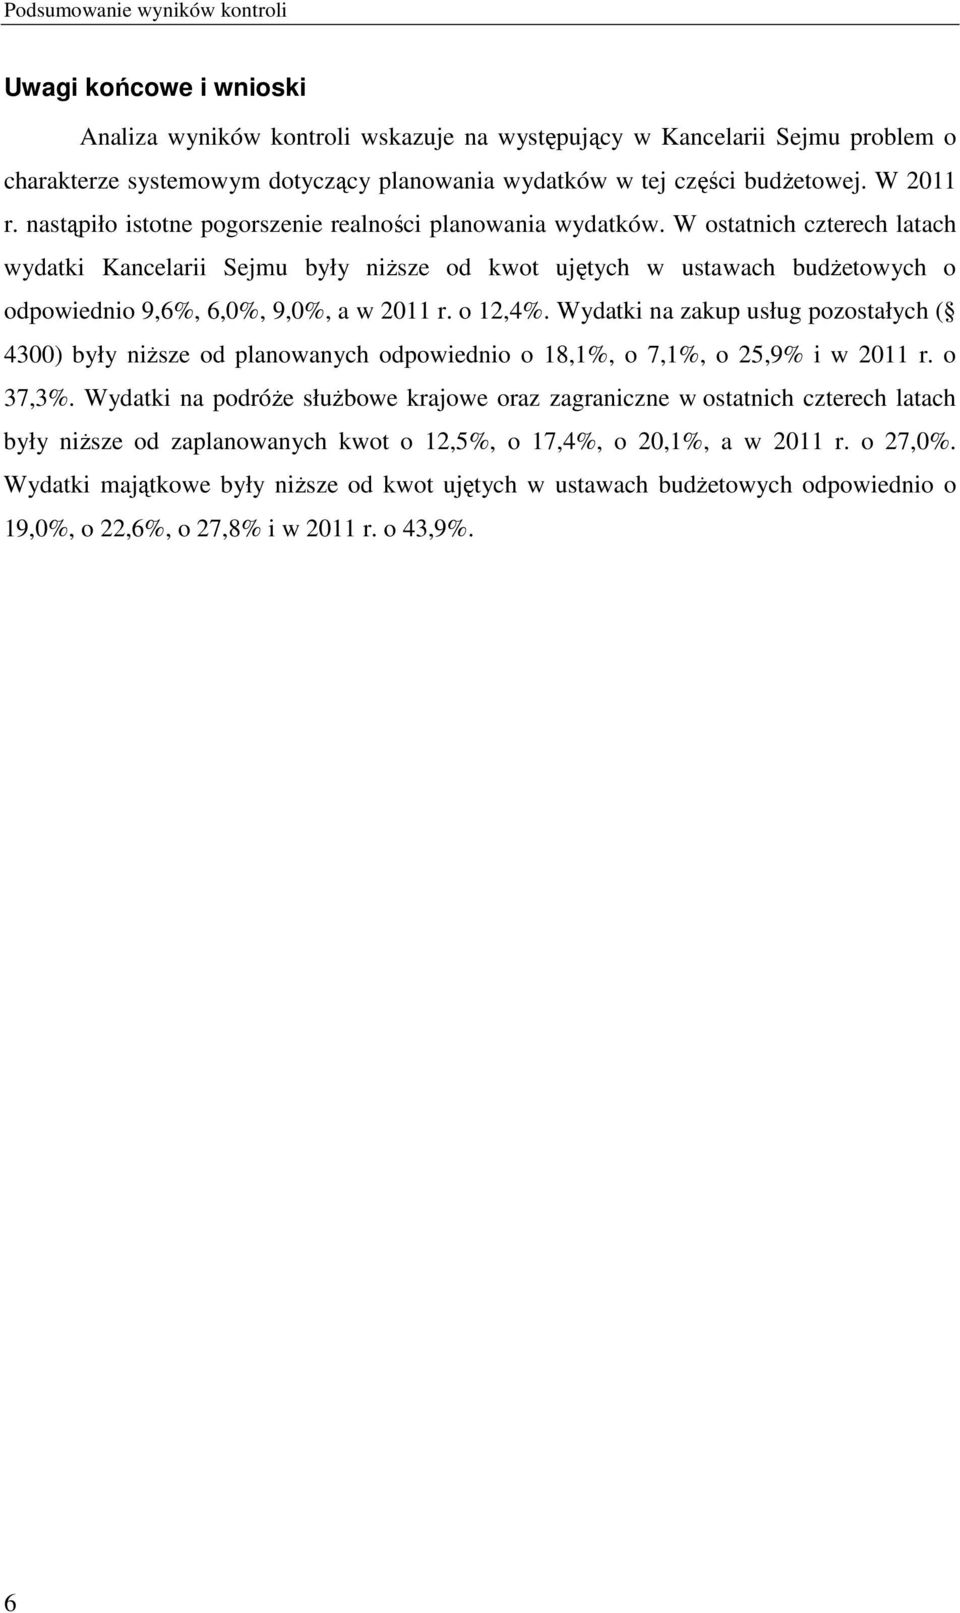 W ostatnich czterech latach wydatki Kancelarii Sejmu były niższe od kwot ujętych w ustawach budżetowych o odpowiednio 9,6%, 6,0%, 9,0%, a w 2011 r. o 12,4%.